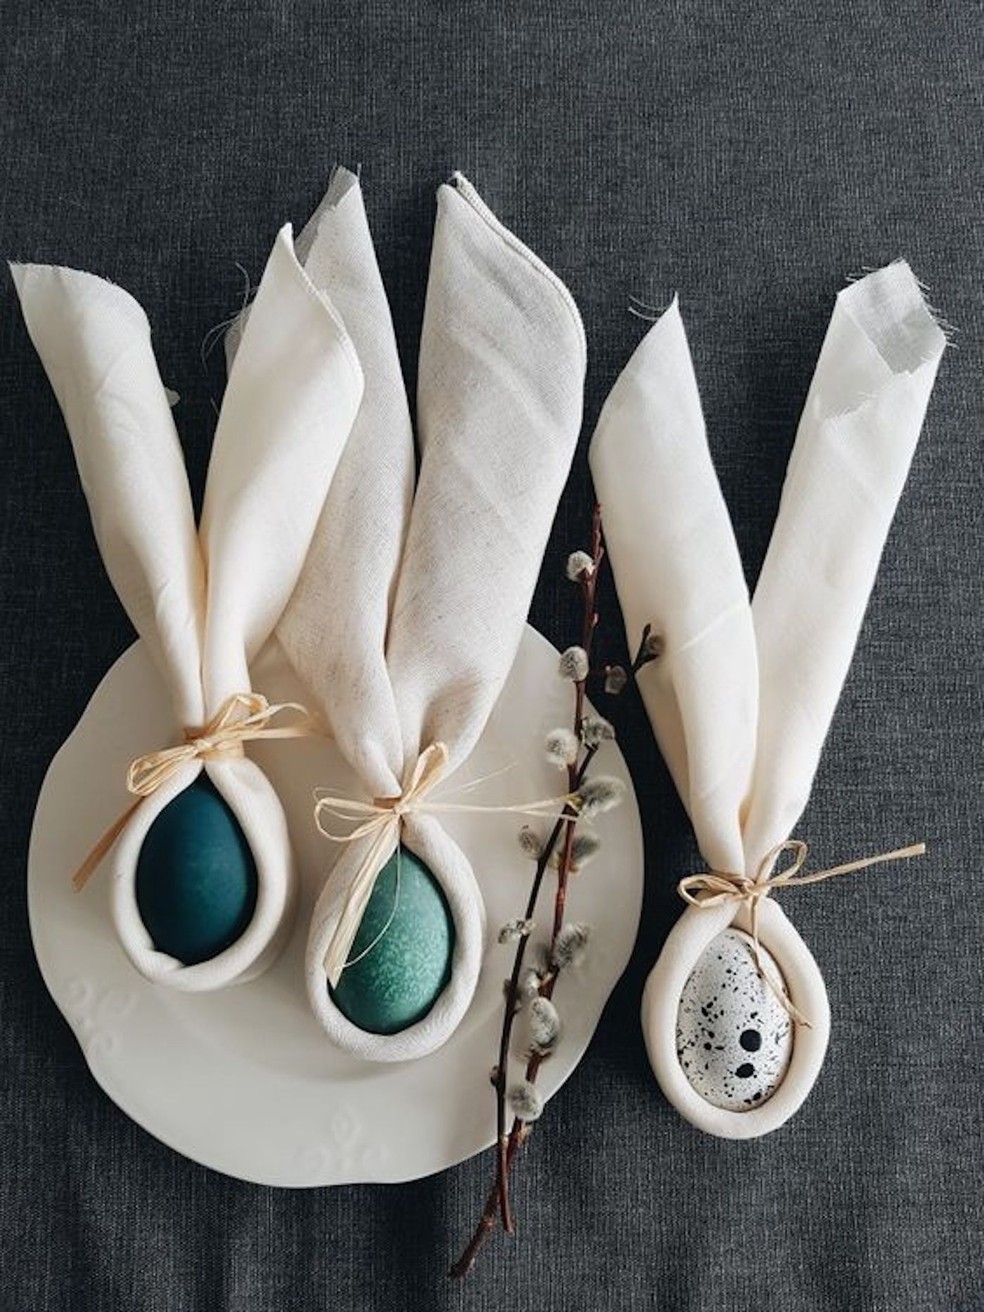 Para demarcar os lugares da mesa, os ovos com orelhas de tecido ficam super fofos — Foto: Pinterest / Polly Peçanha / Reprodução